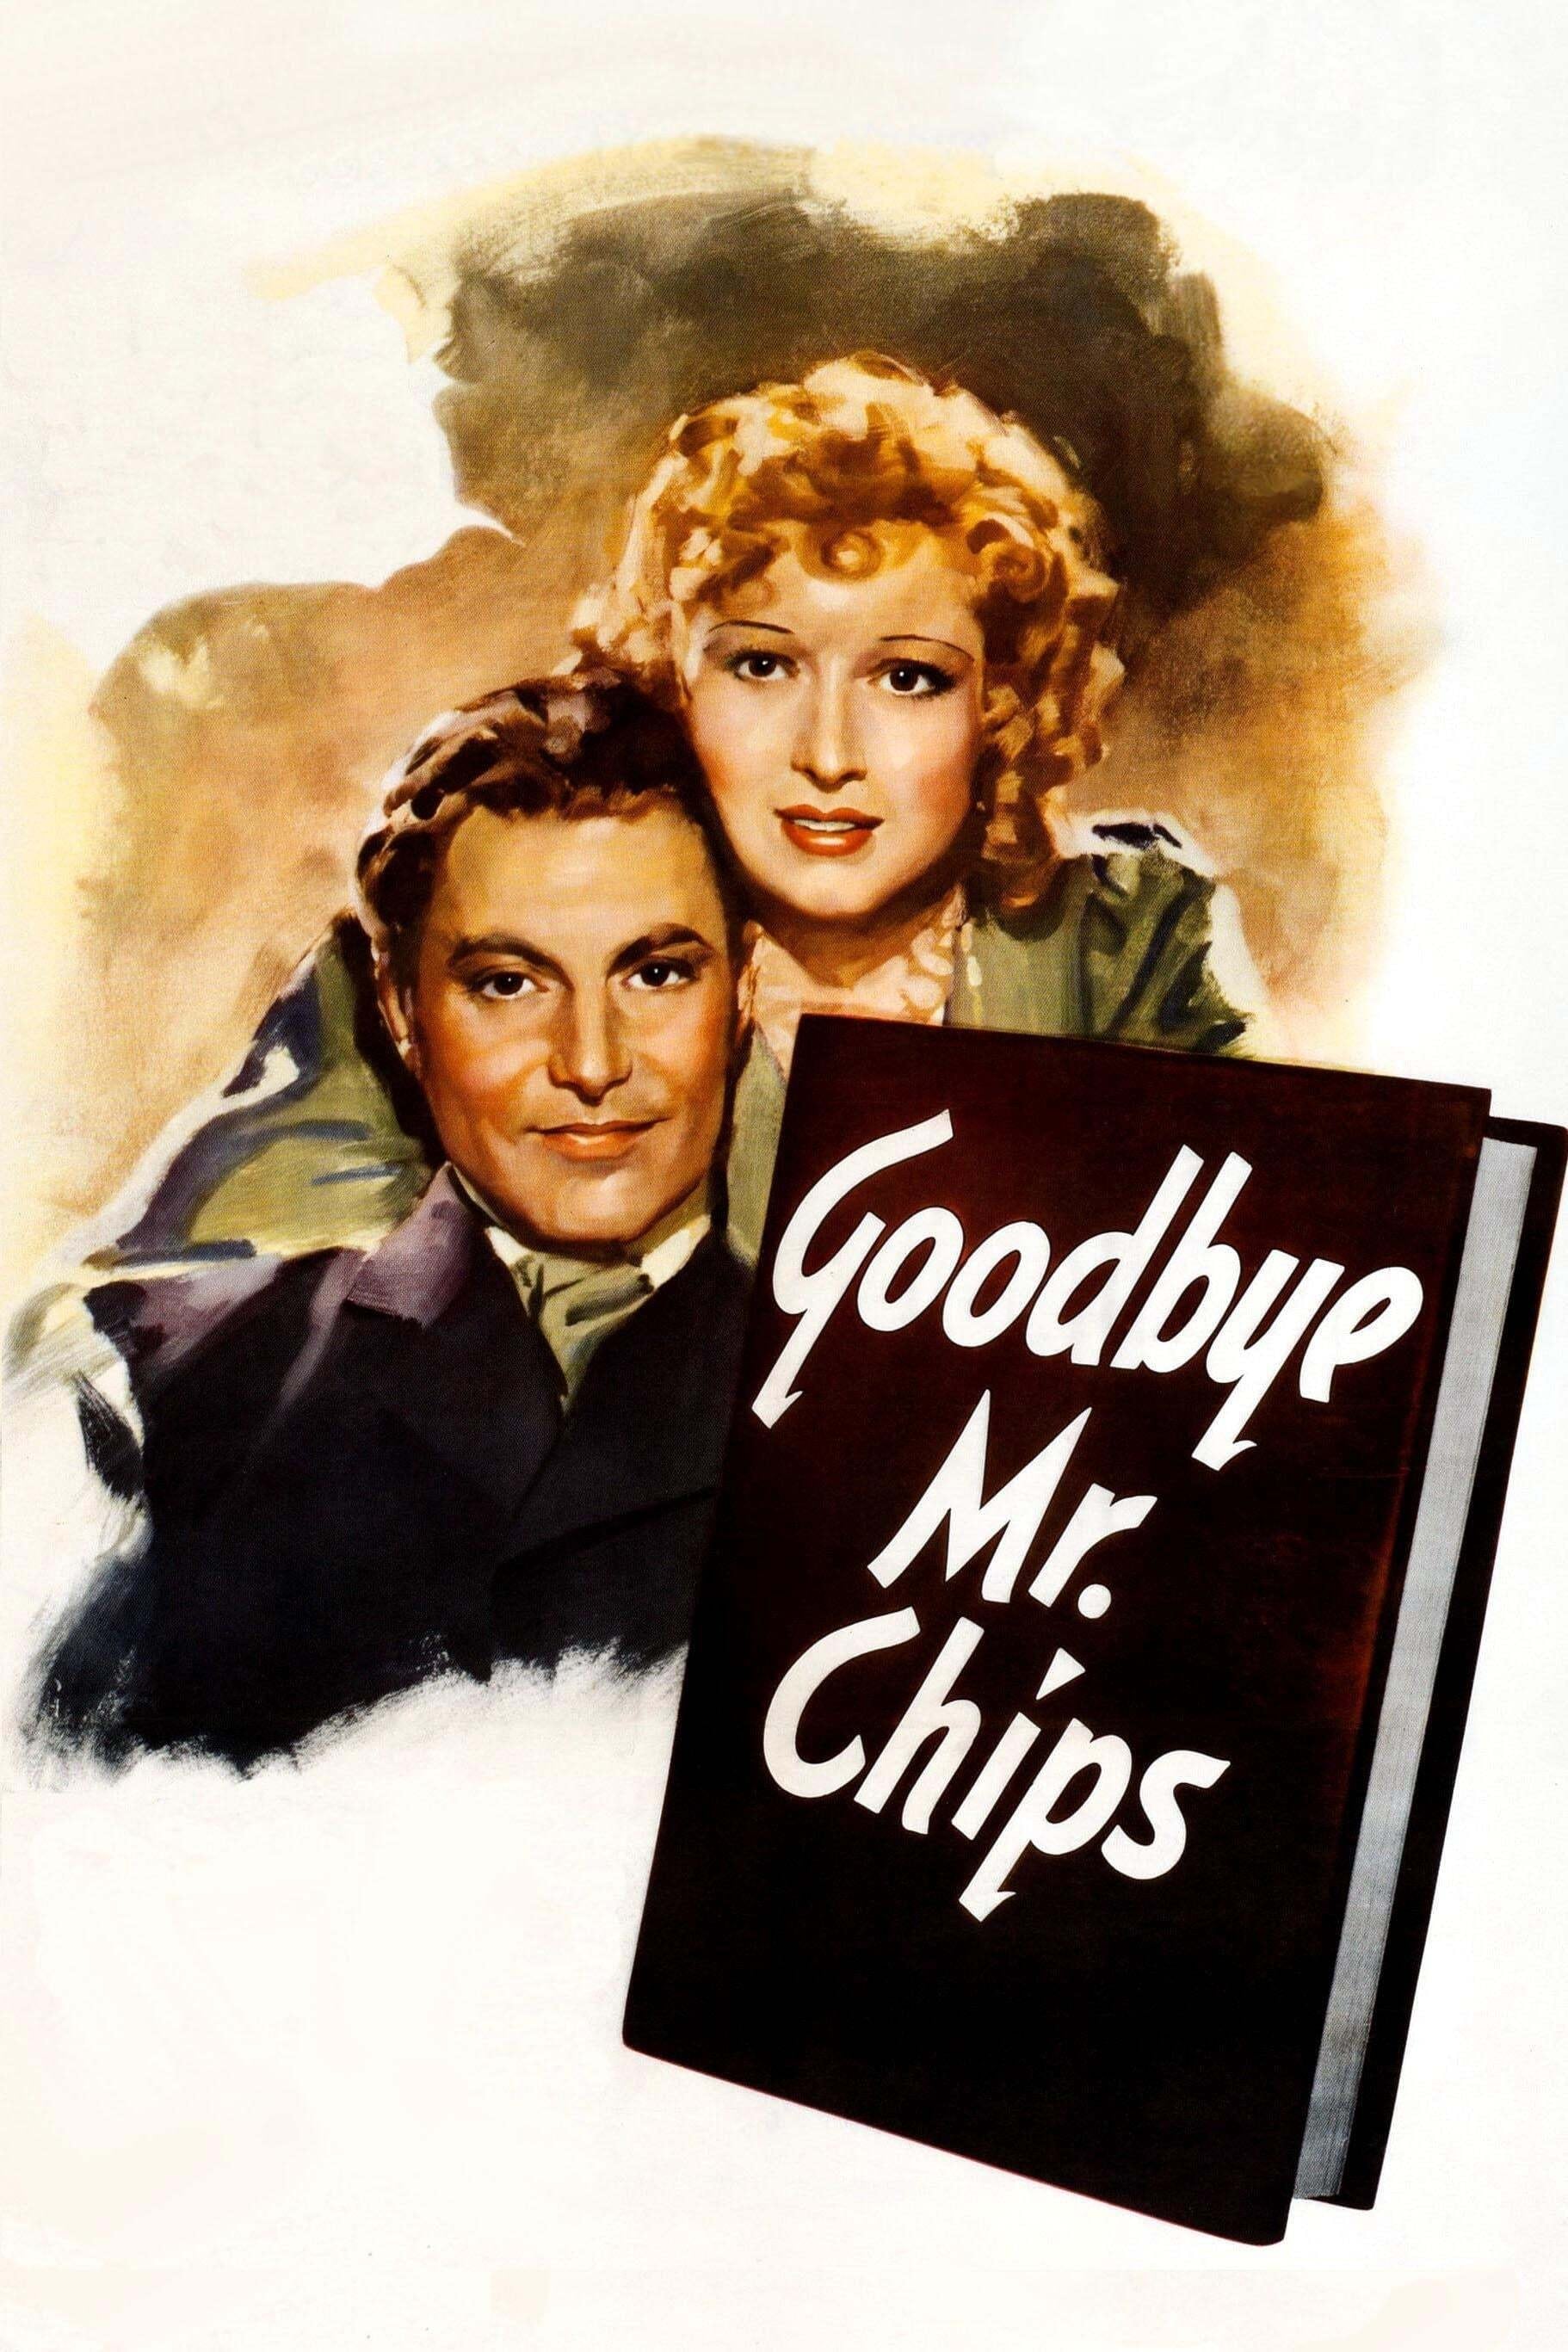 Au revoir Mr. Chips!